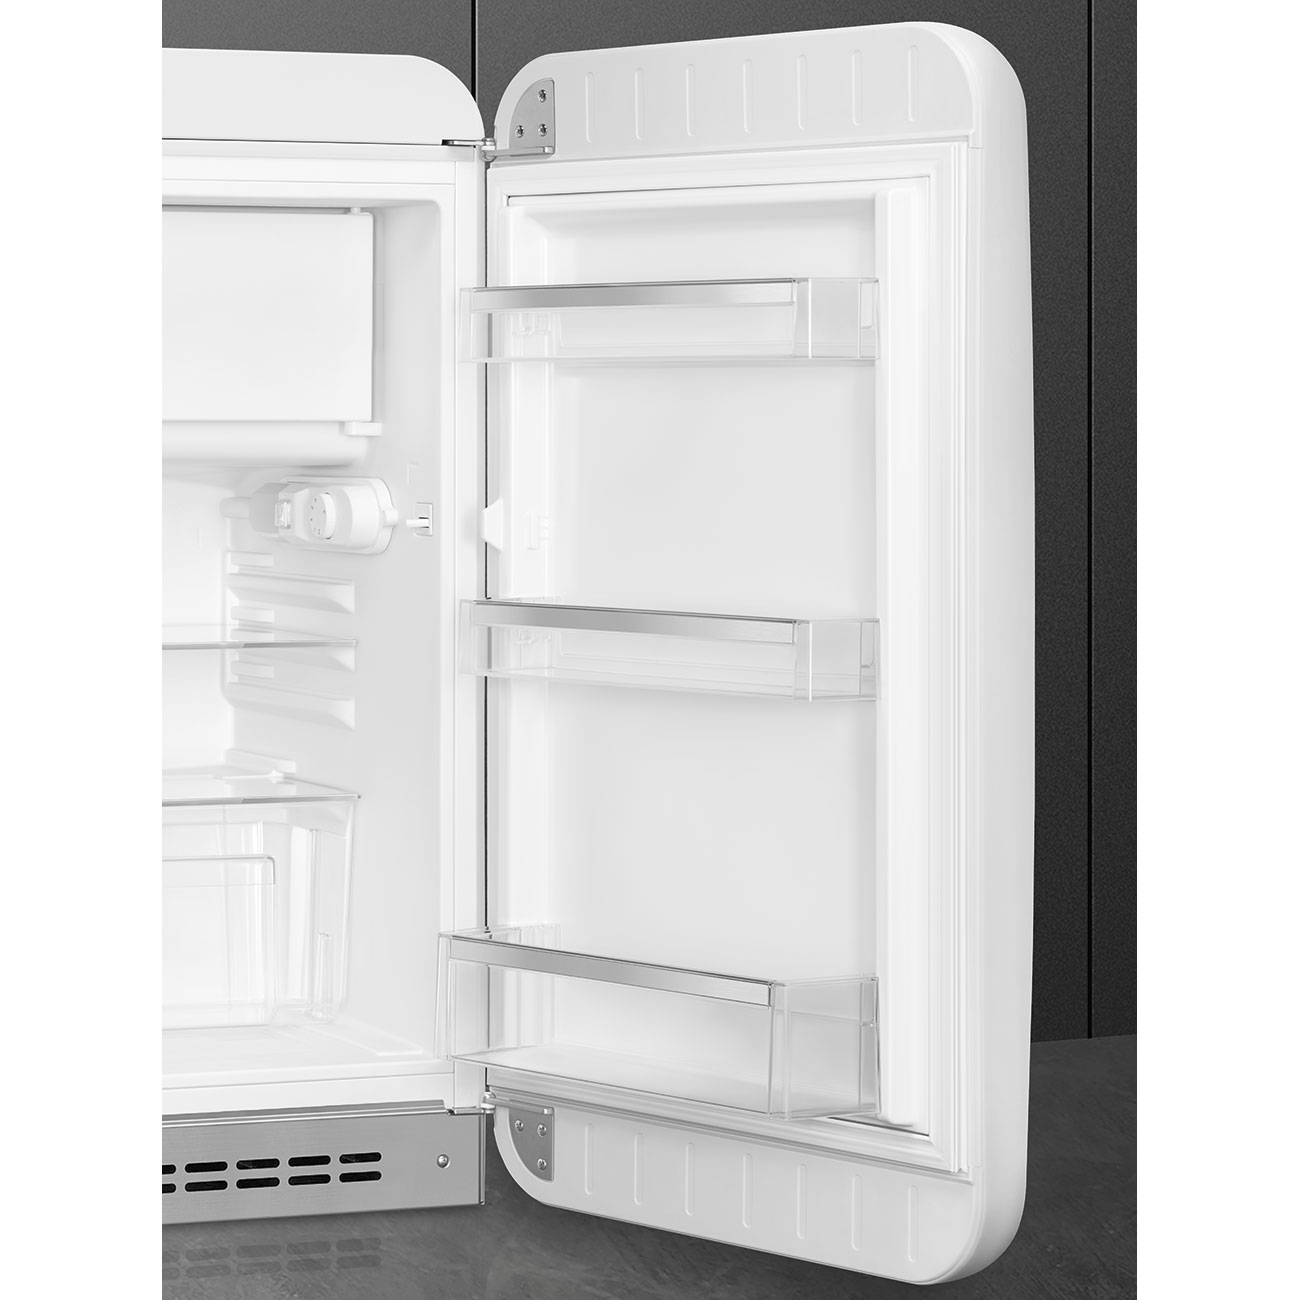 White refrigerator - Smeg_7